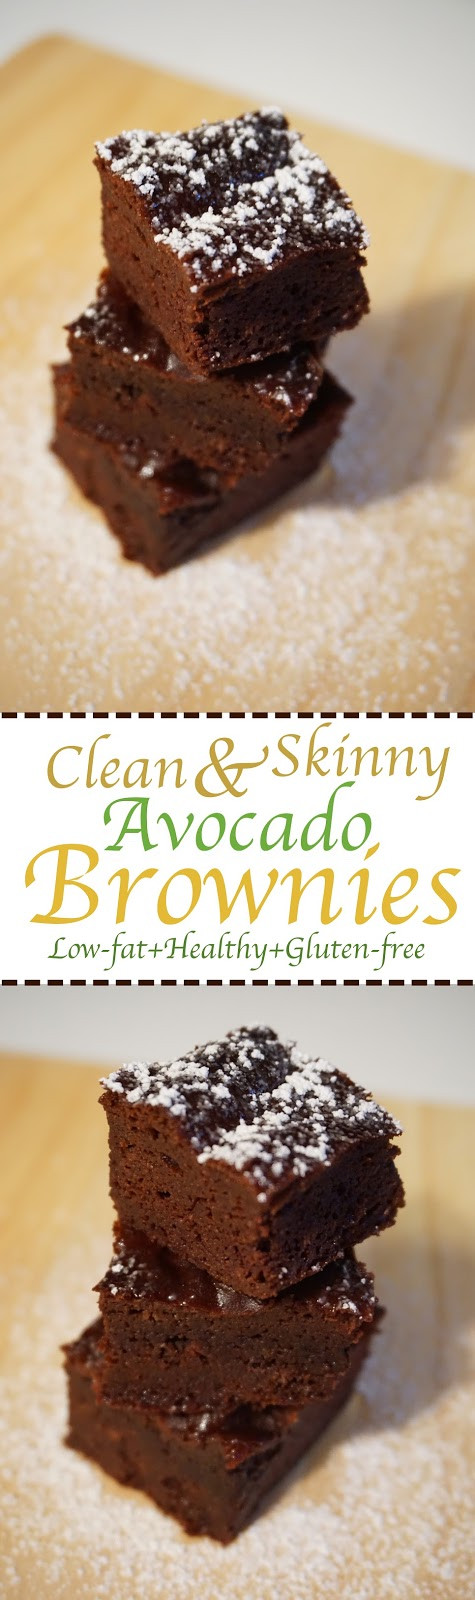 Healthy Avocado Brownies
 Life With Krystal Clean & Skinny Healthy Avocado Brownies